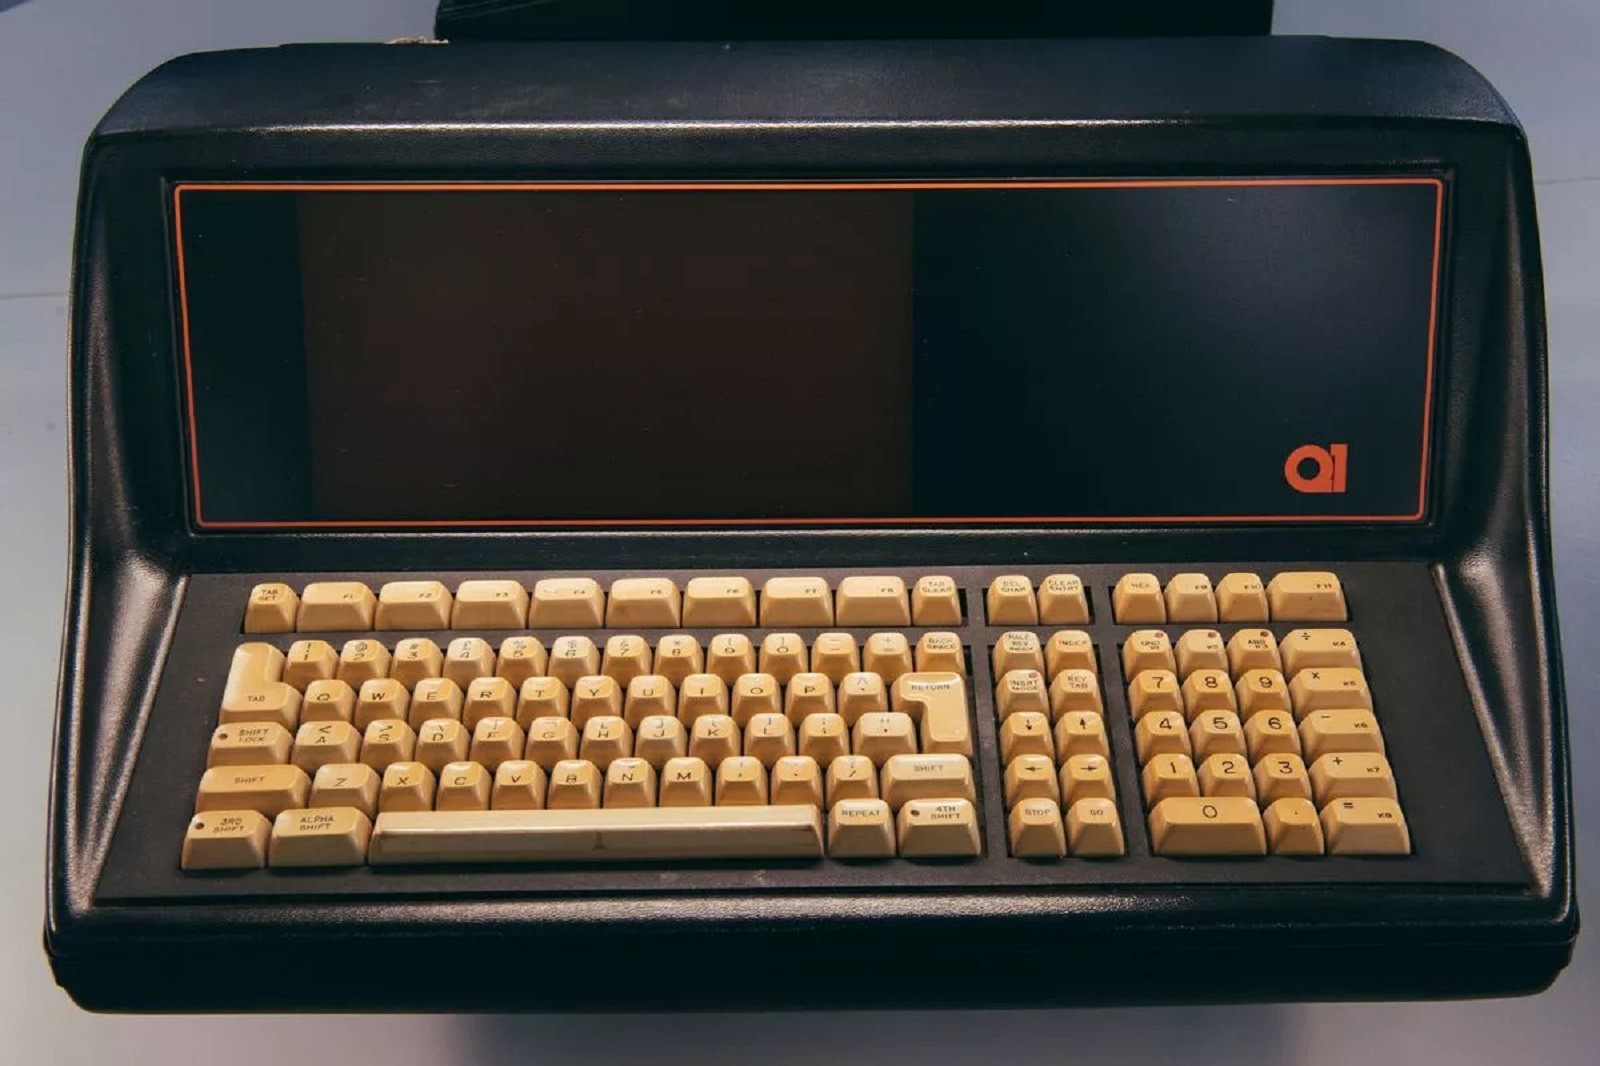 Oto najstarszy znany komputer stacjonarny. Znaleziono go zupełnie przypadkowo